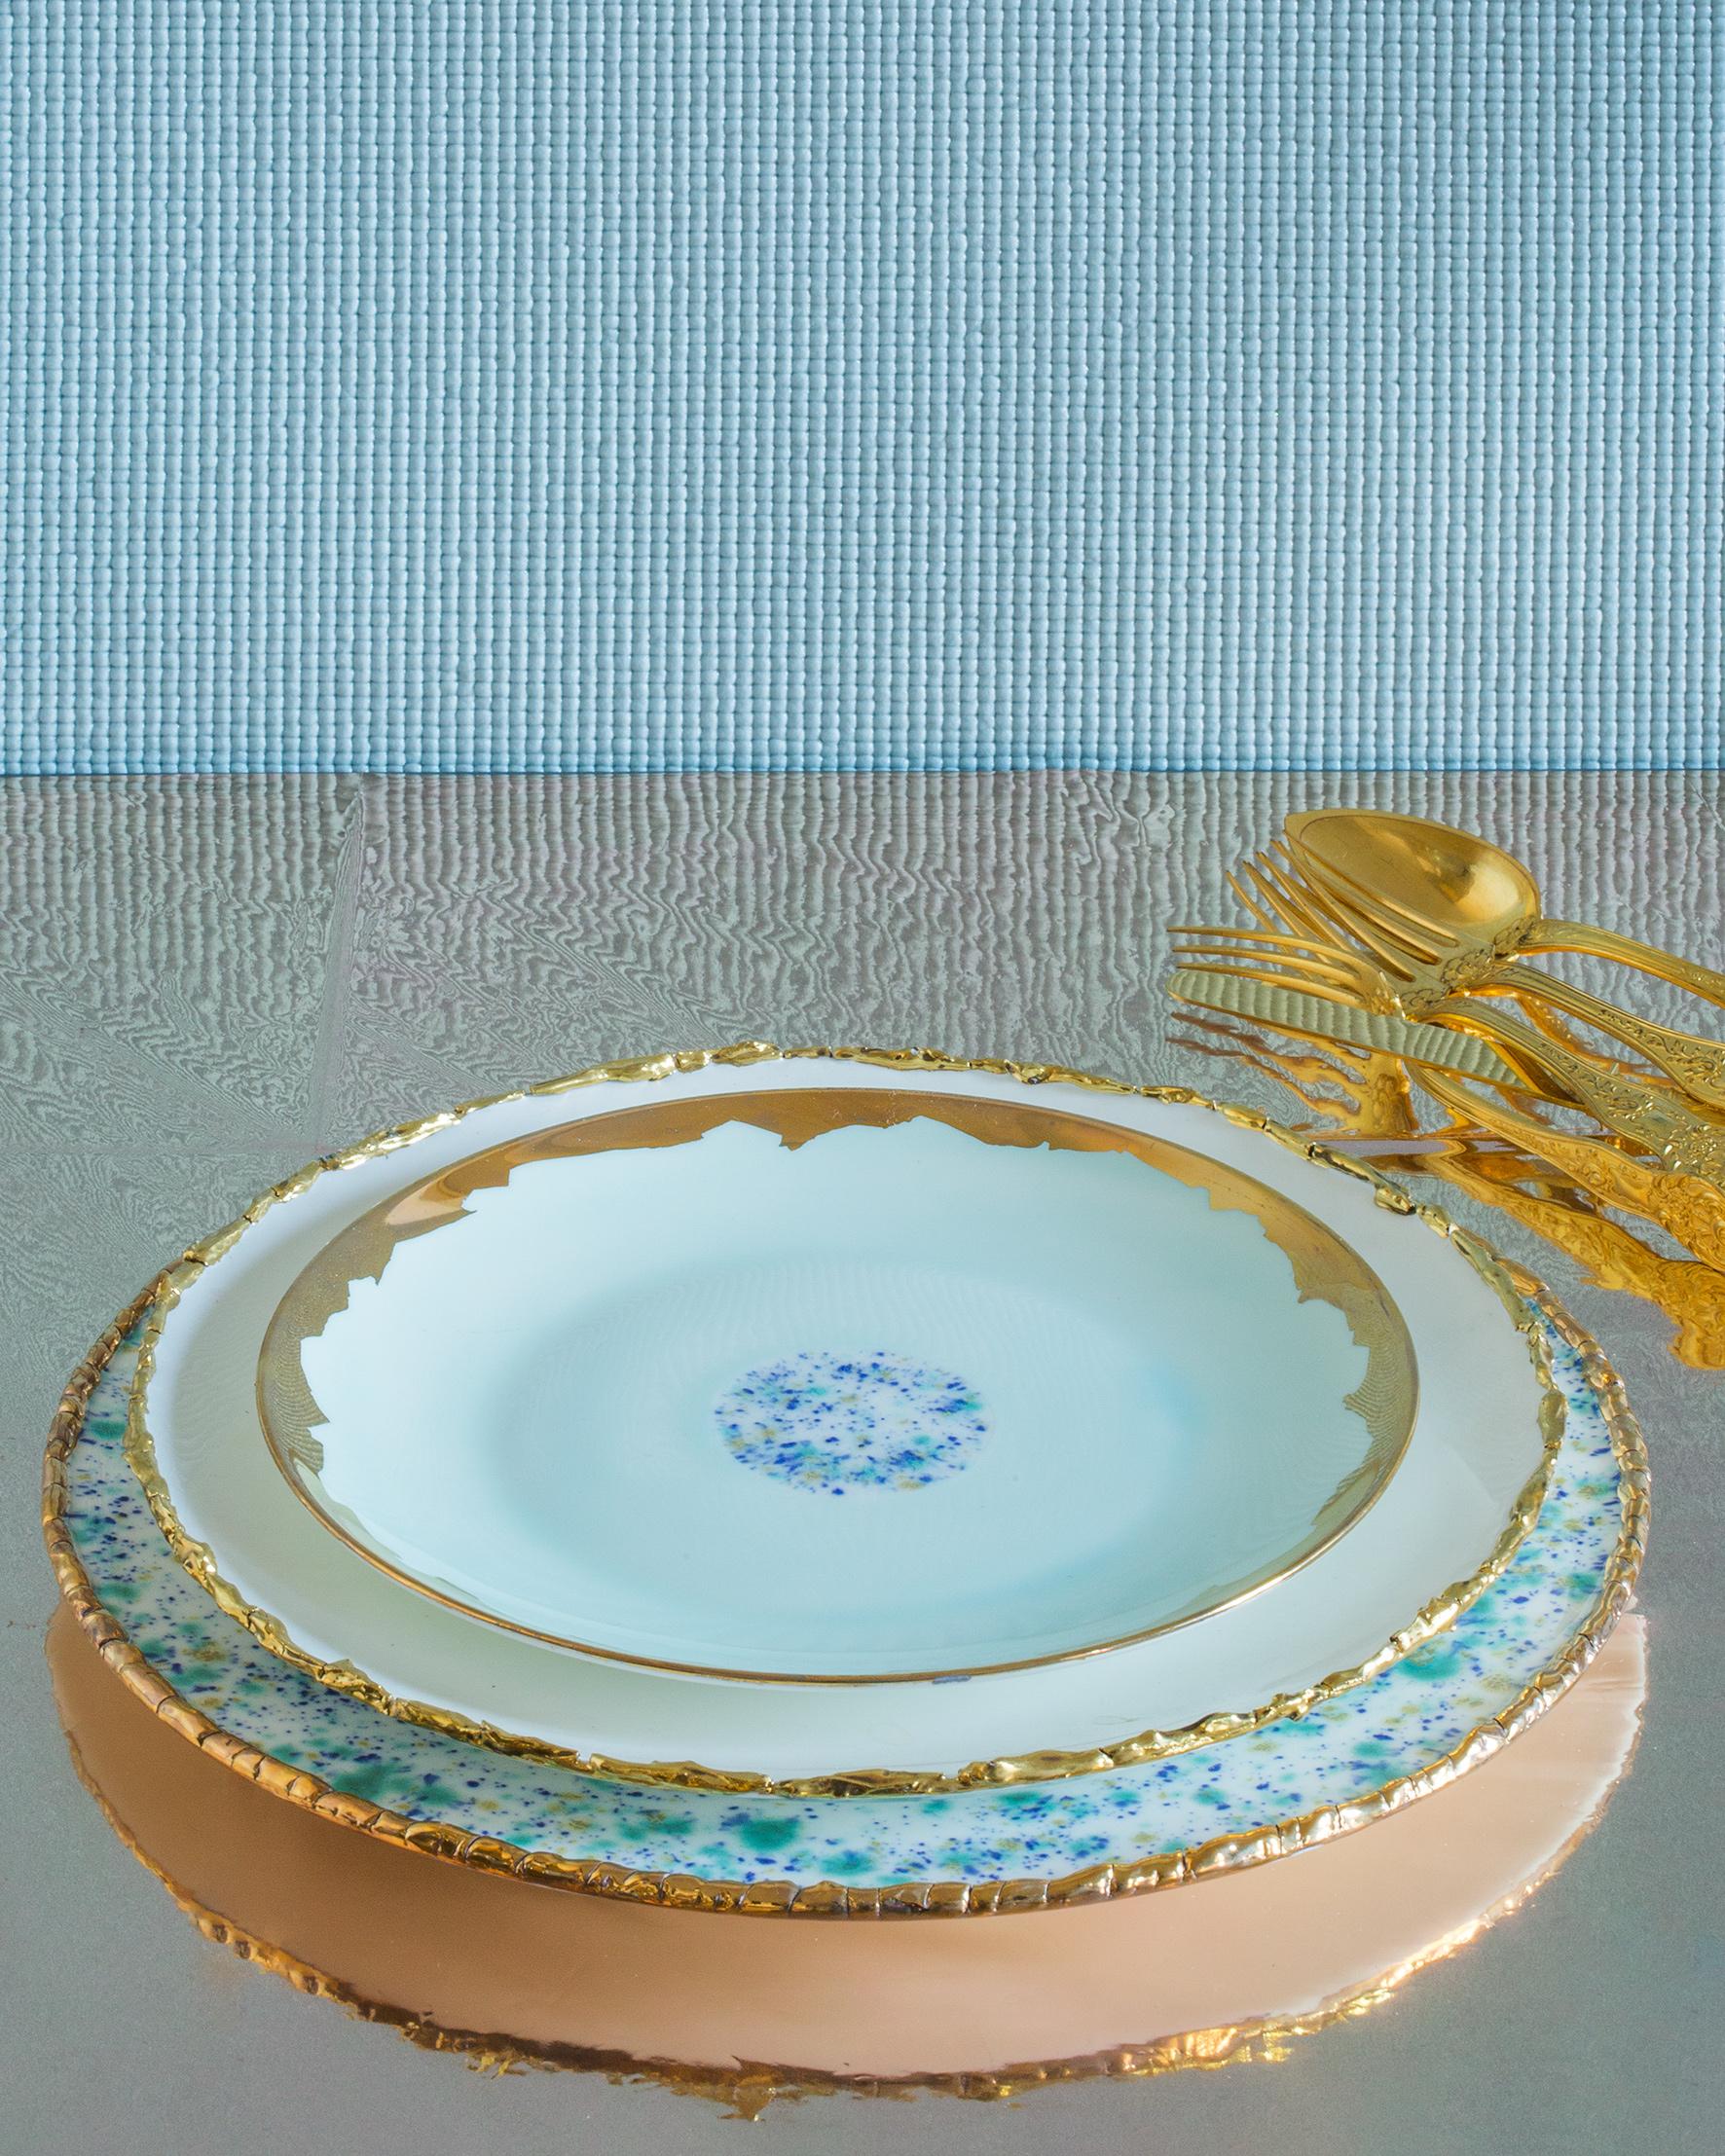 Dieser in Italien aus feinstem Porzellan handgefertigte Platzteller aus blauem Marmor hat einen originellen goldfarbenen Craquelé-Rand, der das blau-gelb-grüne Dekor und den smaragdgrünen Kern betont.

Platzteller mit Rand, Craquelé Edge, Ø